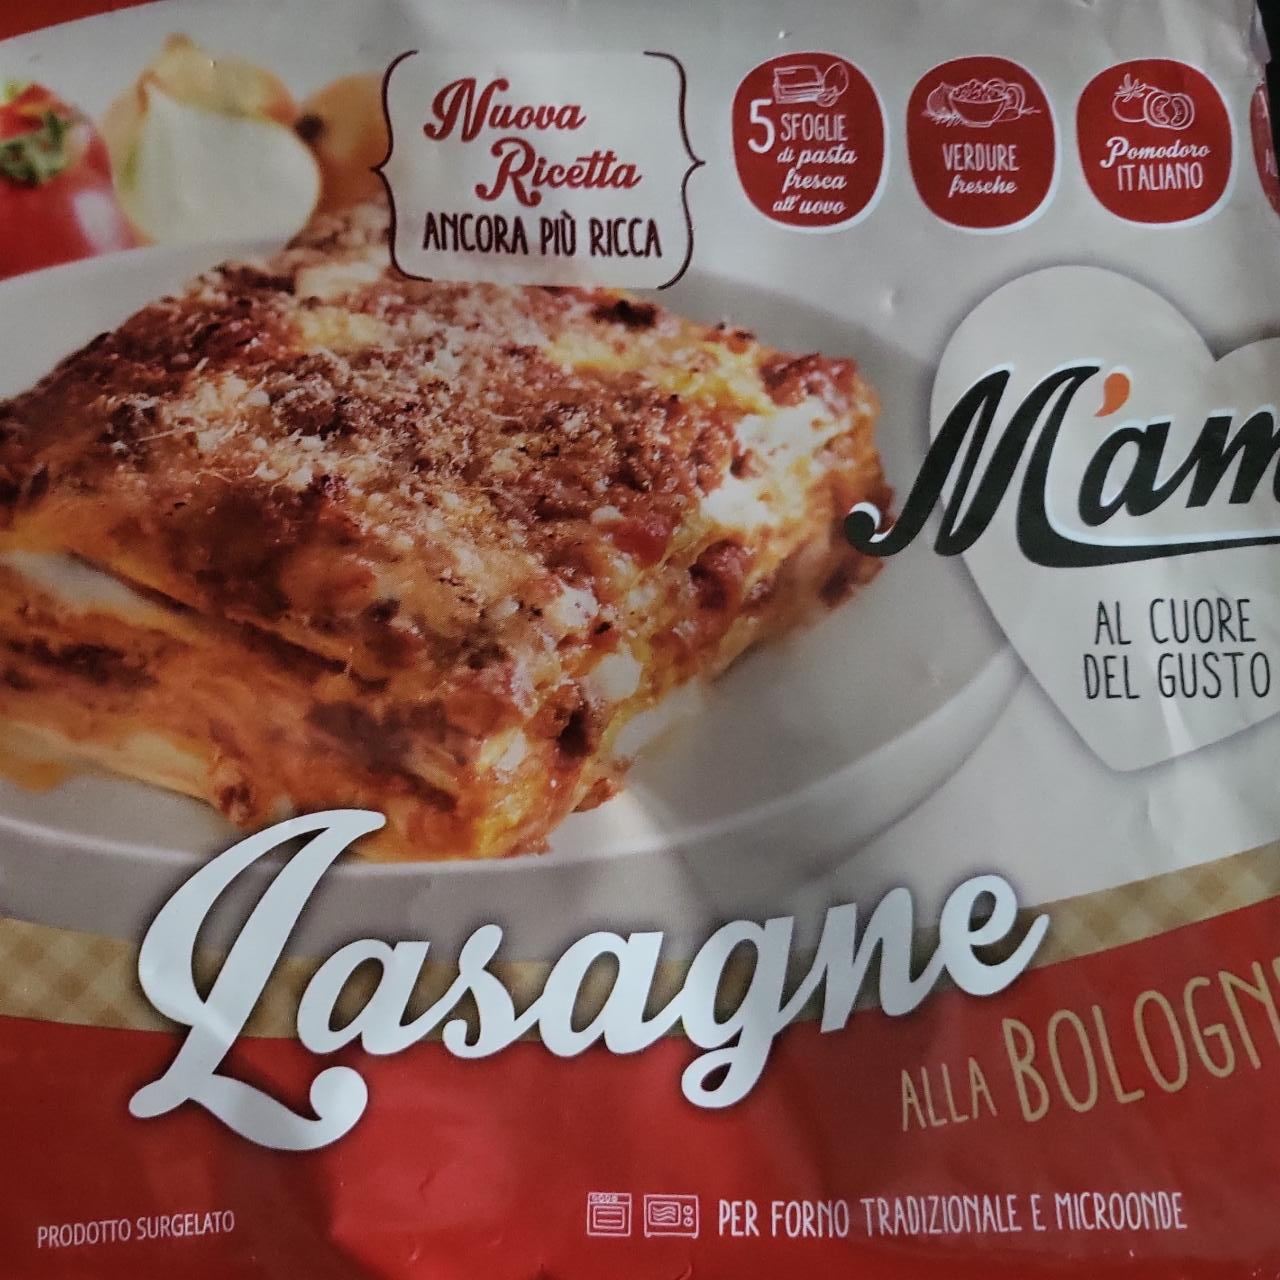 Fotografie - Al cuore del gusto Lasagne alla Bolognese M'ama